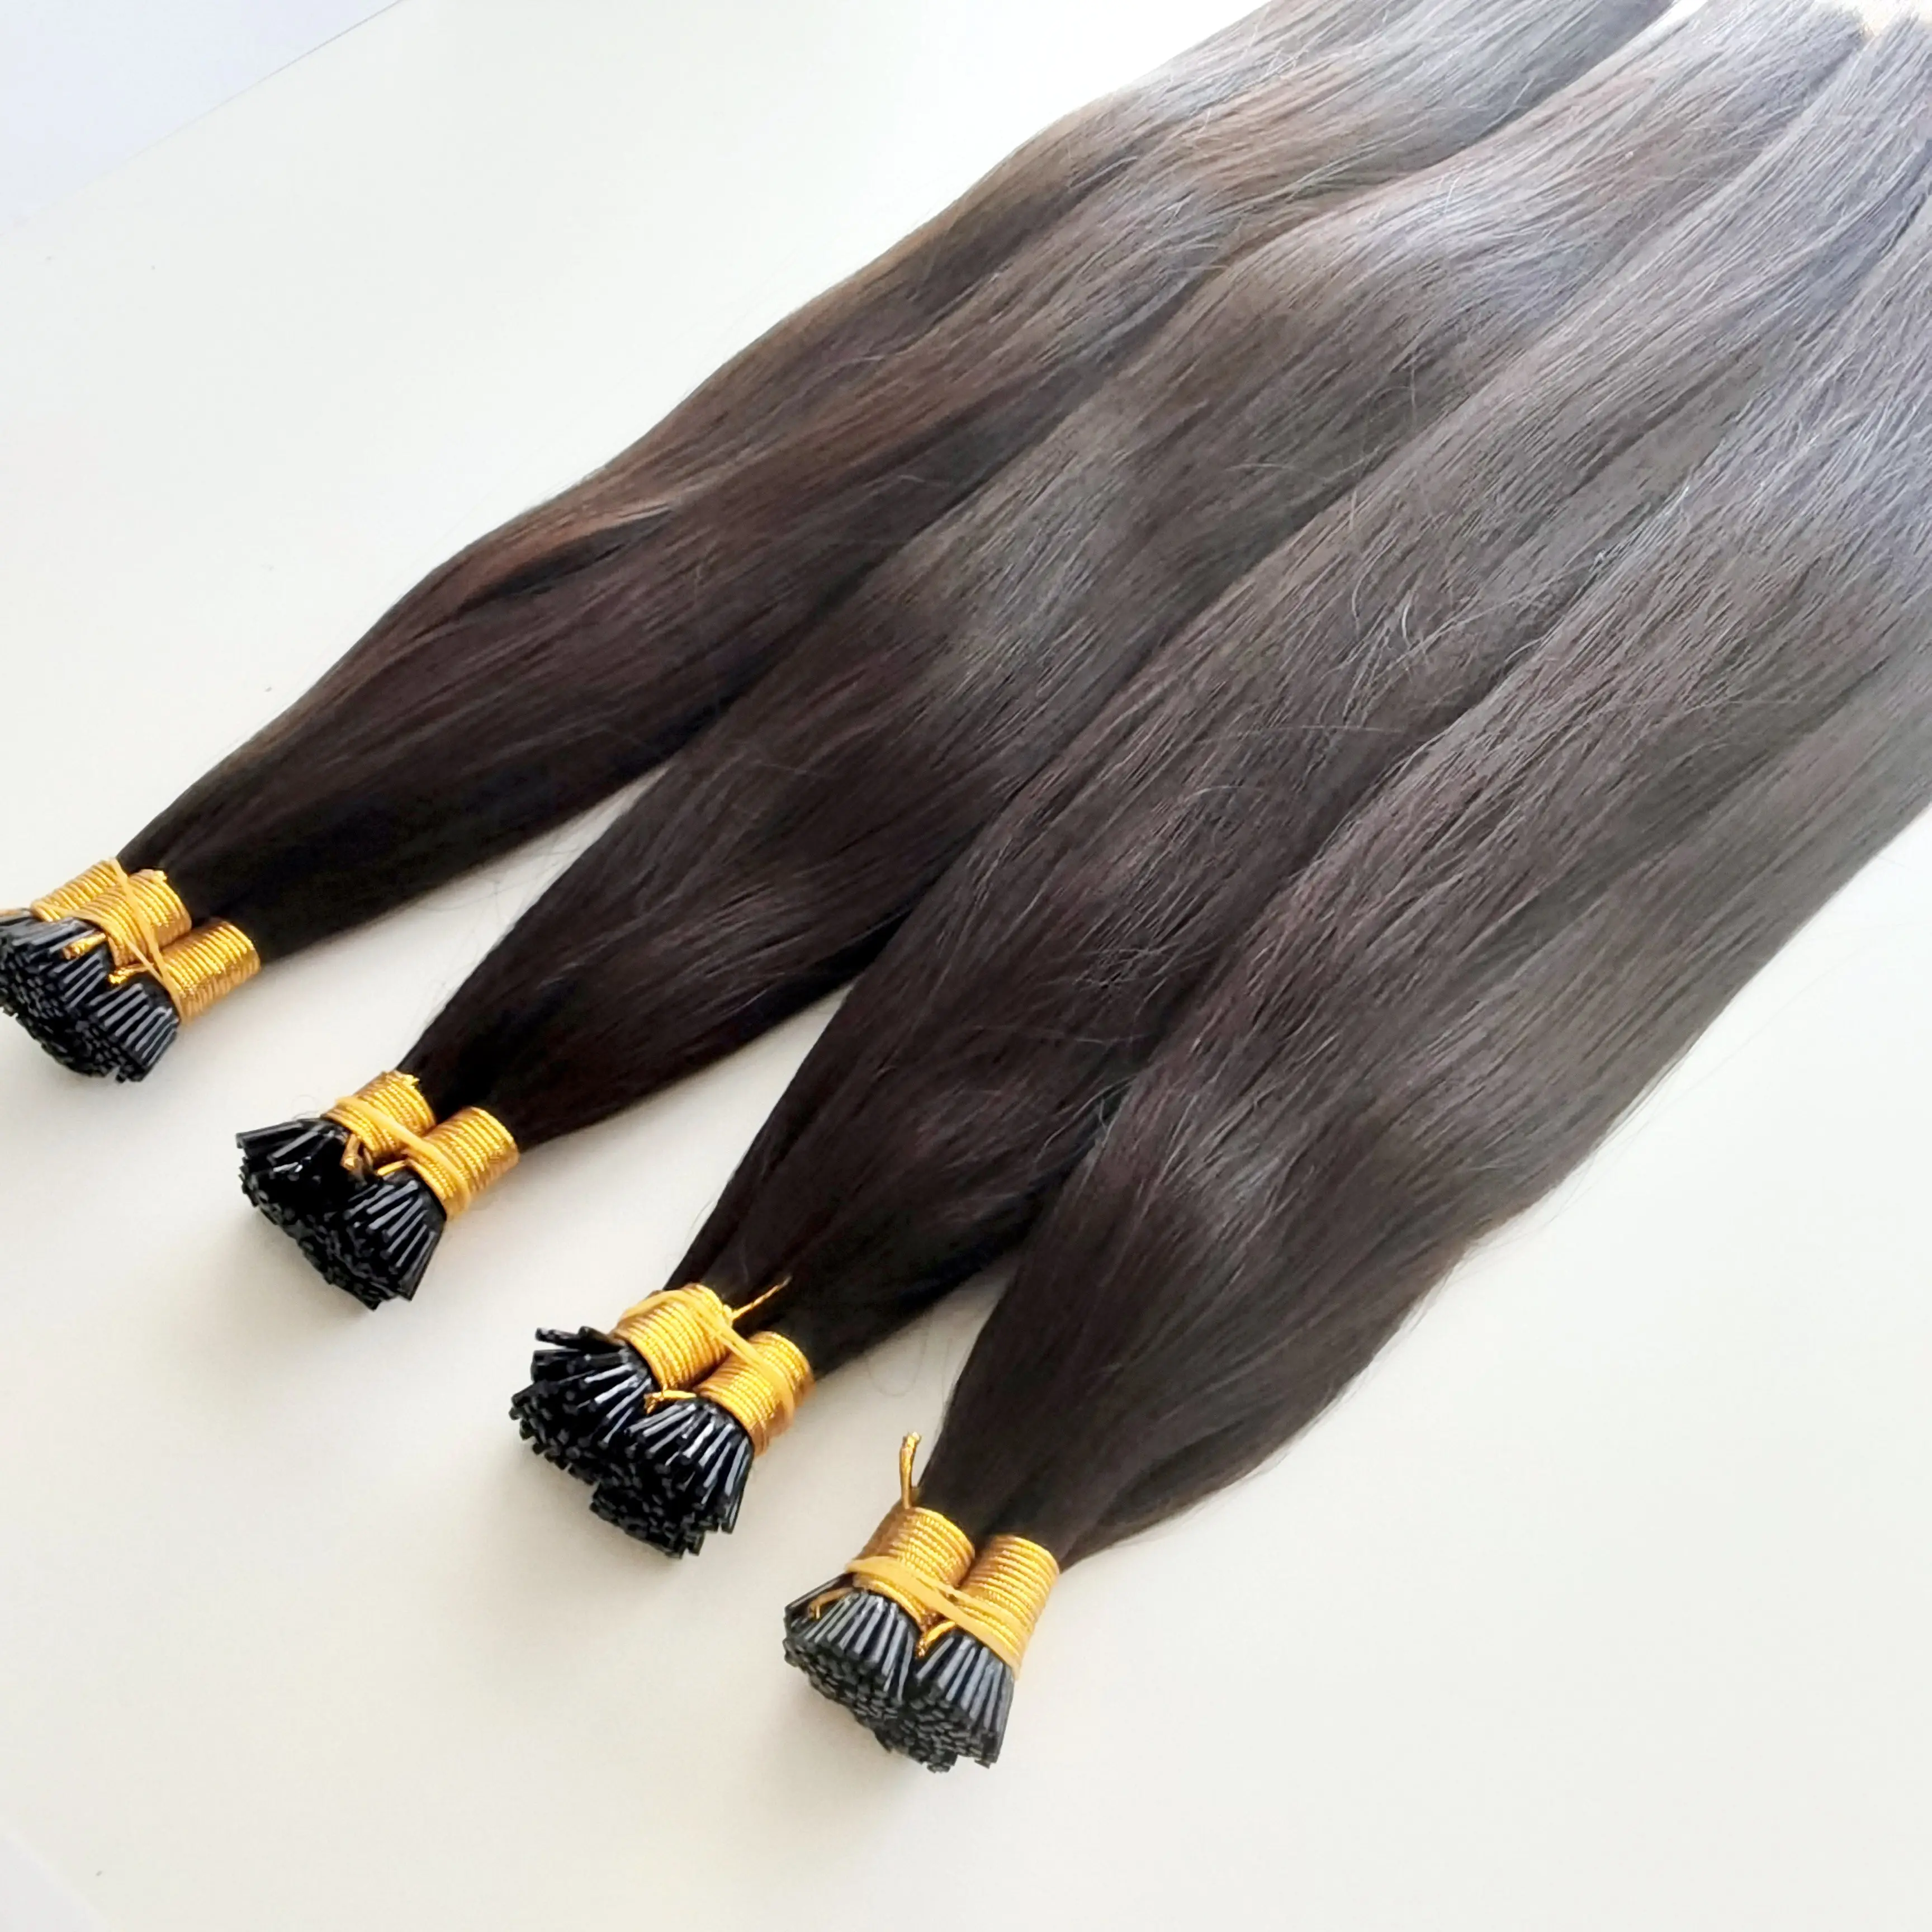 وصلات إطالة شعر I-tip غير معالج عالي الجودة من الكيراتين البشري الروسي المُوصل مسبقًا بسعر الجملة